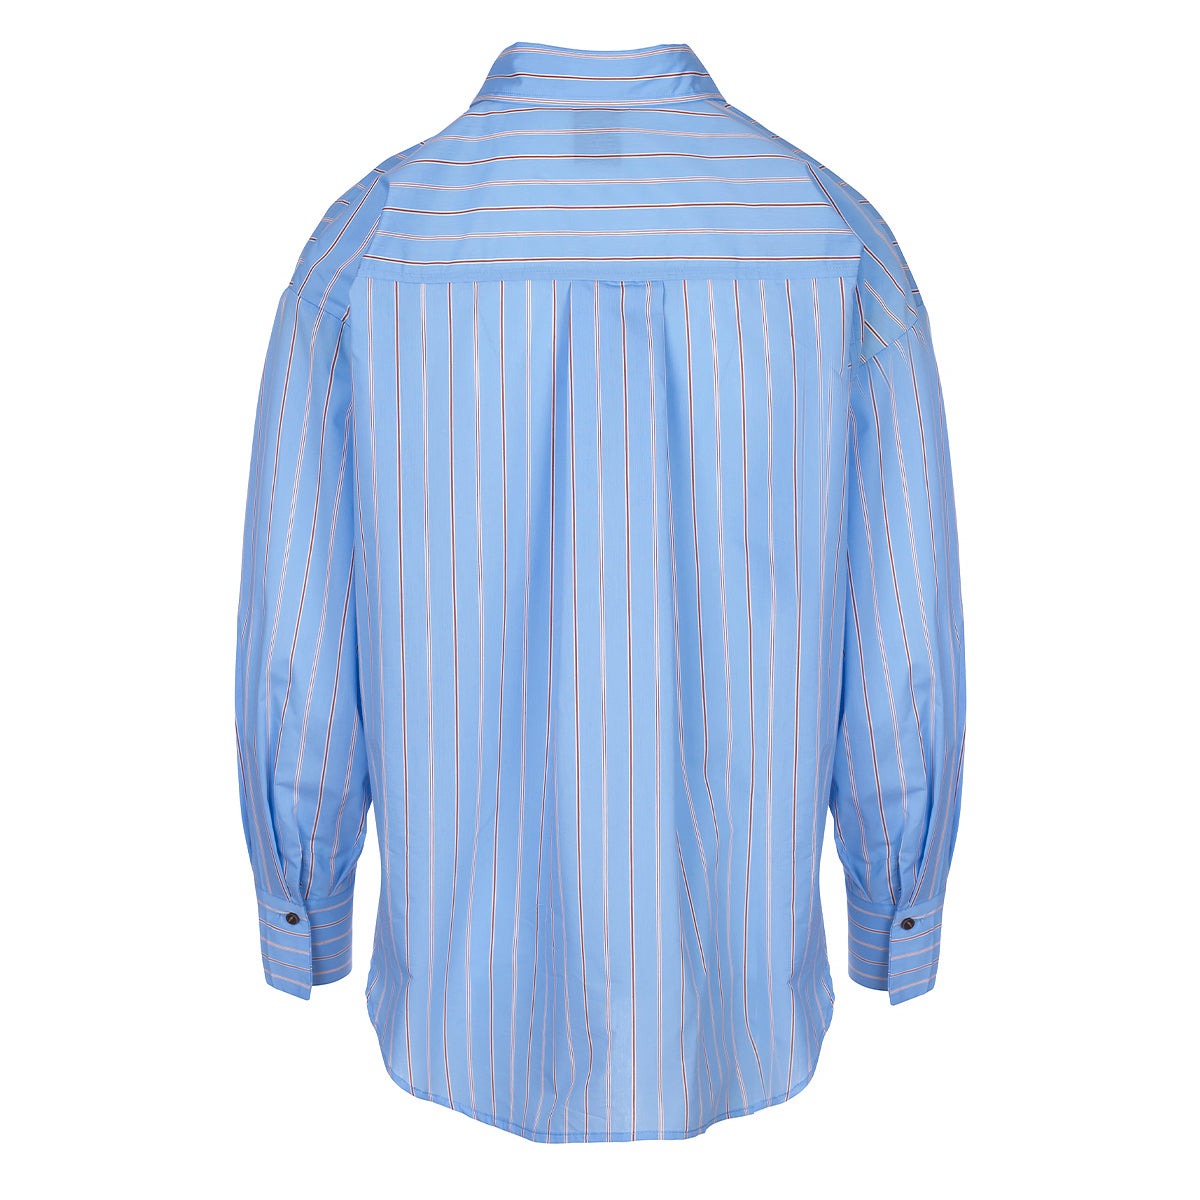 LUXZUZ // ONE TWO Gertanna Shirt Shirt 514 Cashmere Blue